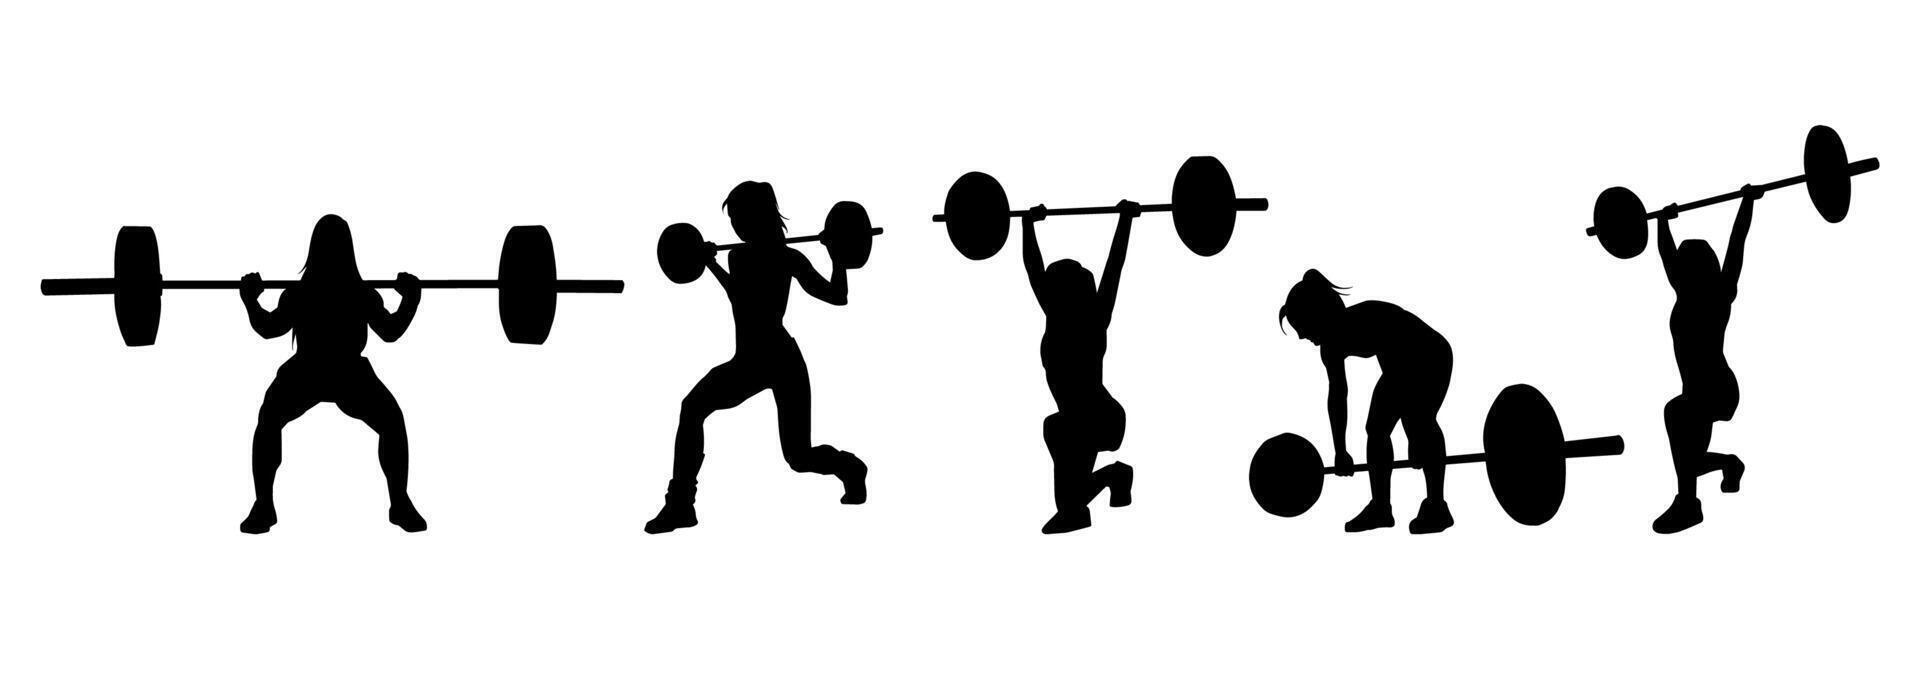 silueta colección de peso levantamiento hembra atleta en acción pose. silueta grupo de mujer atleta en peso levantamiento deporte. vector